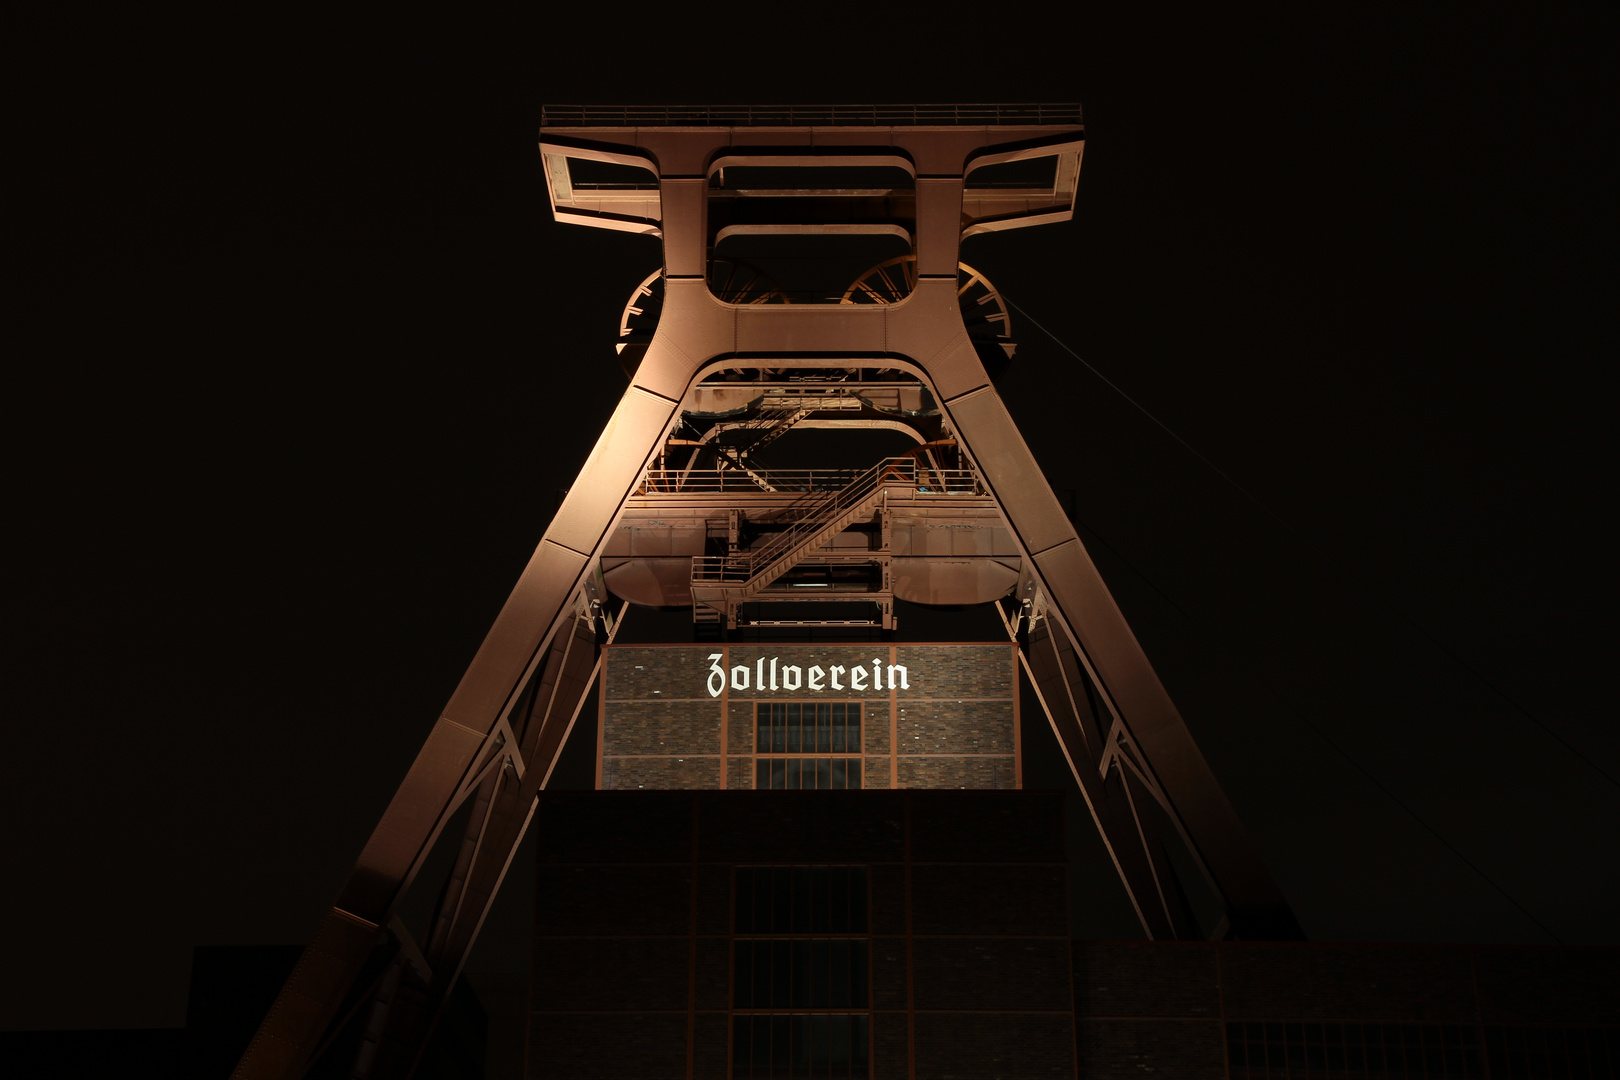 at night, Zollverein